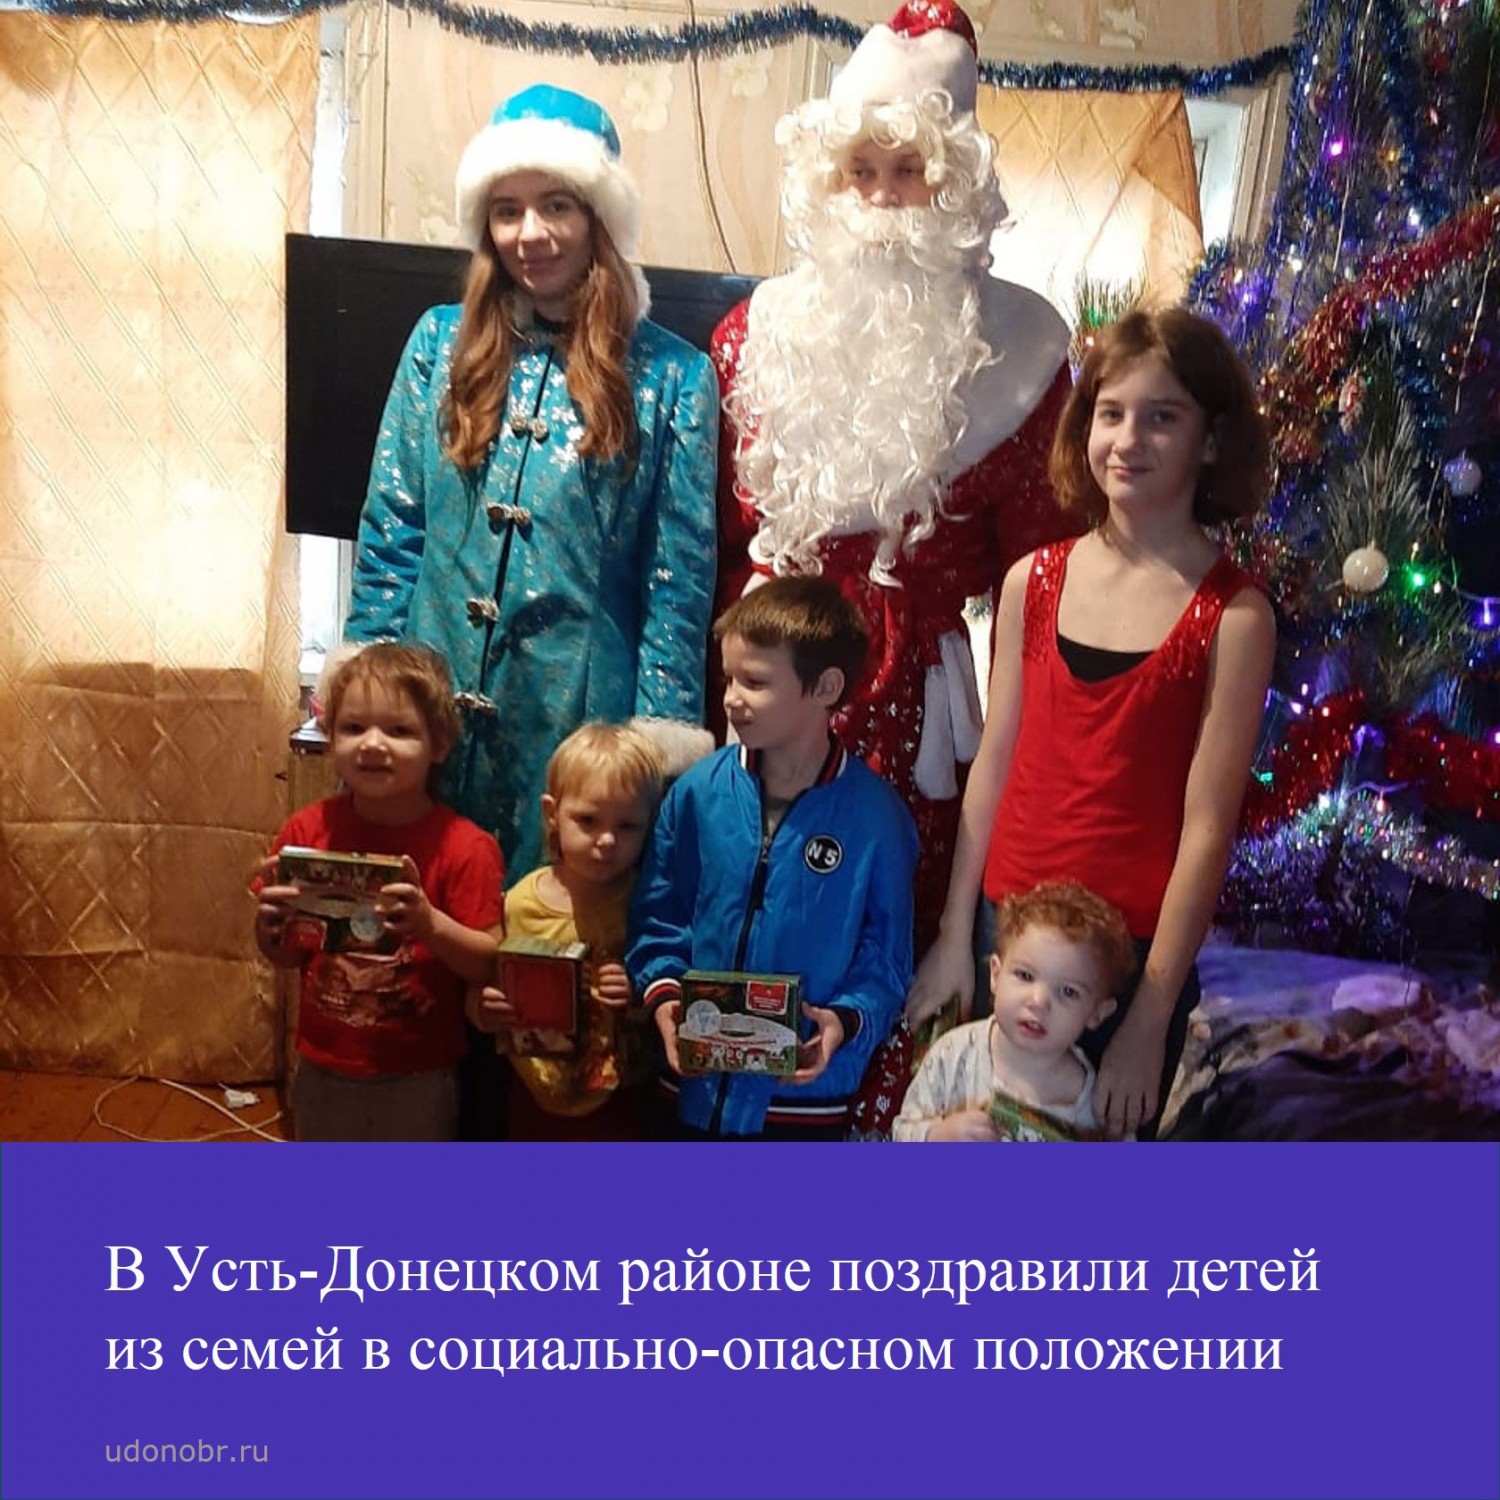 В Усть-Донецком районе поздравили детей из семей в социально-опасном положении